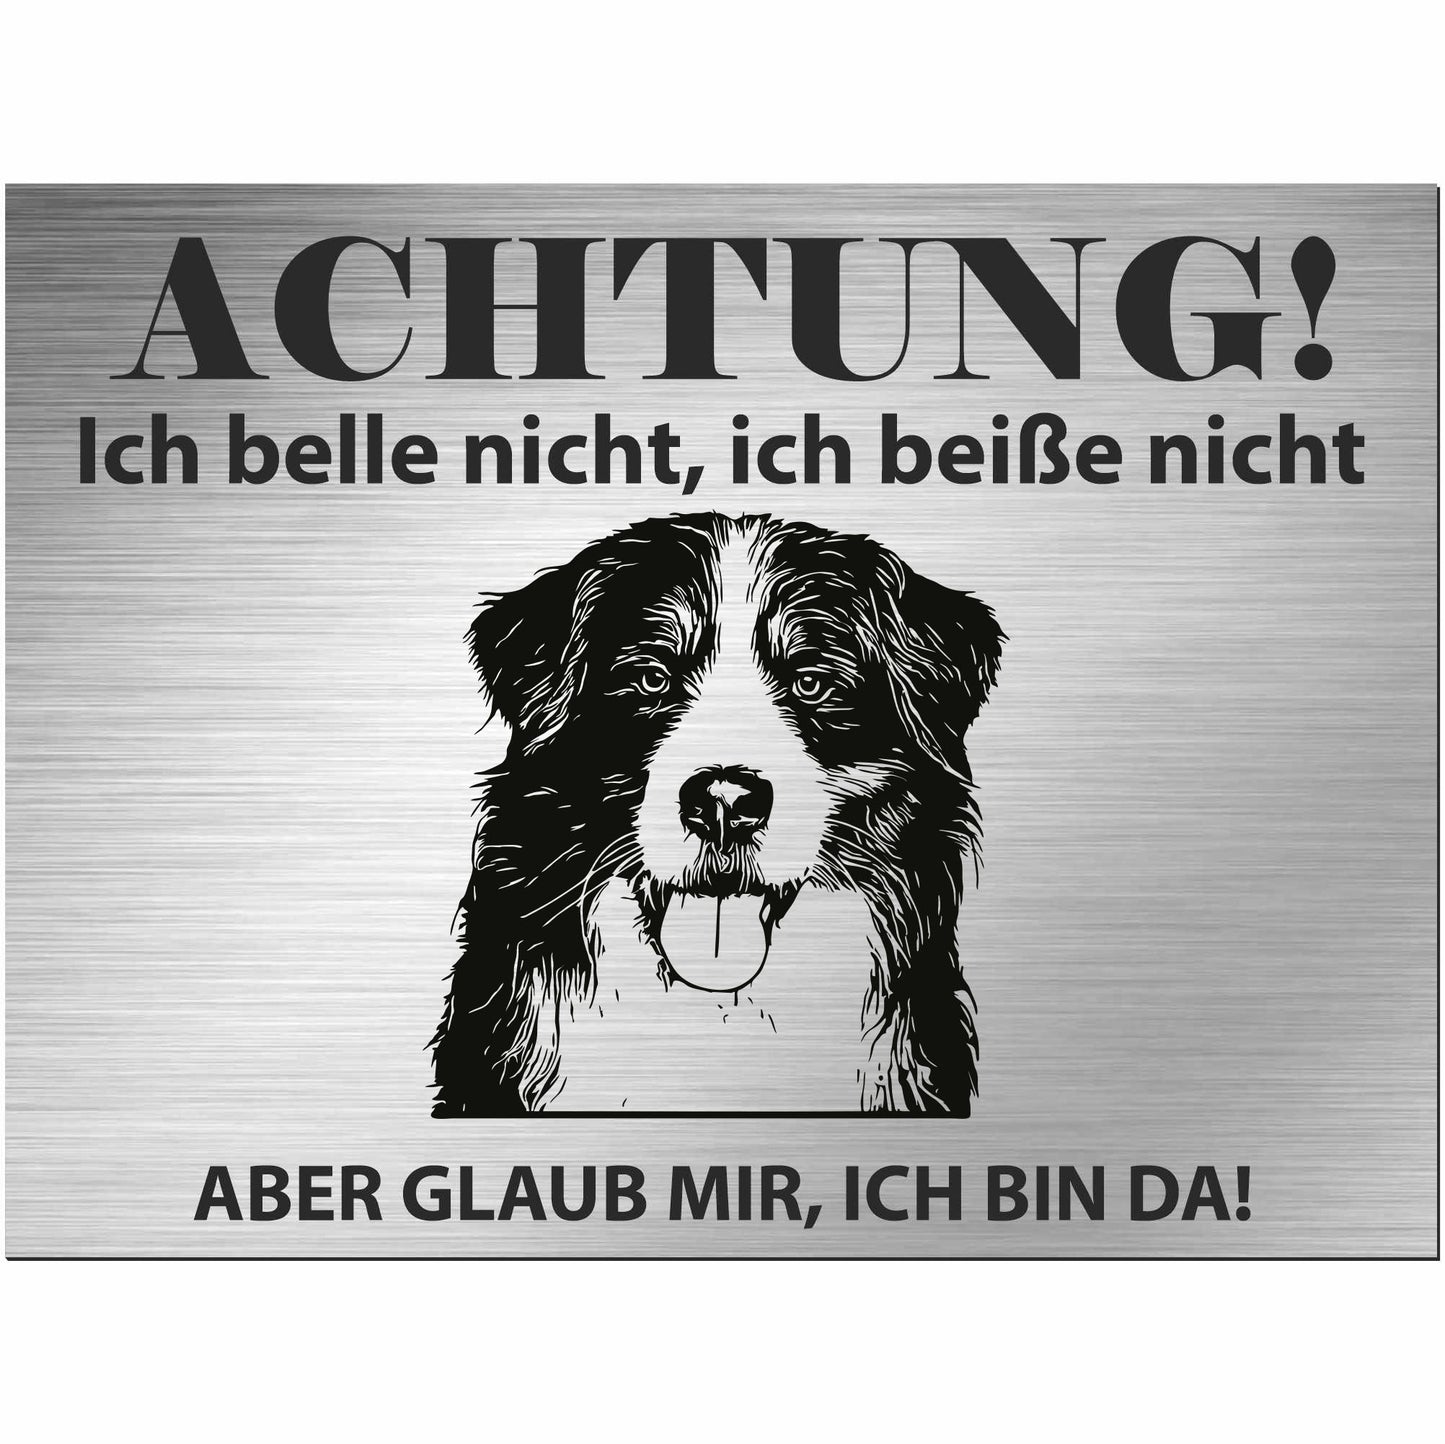 Berner Sennenhund - Schild bedruckt - Alu-Dibond Edelstahl Look